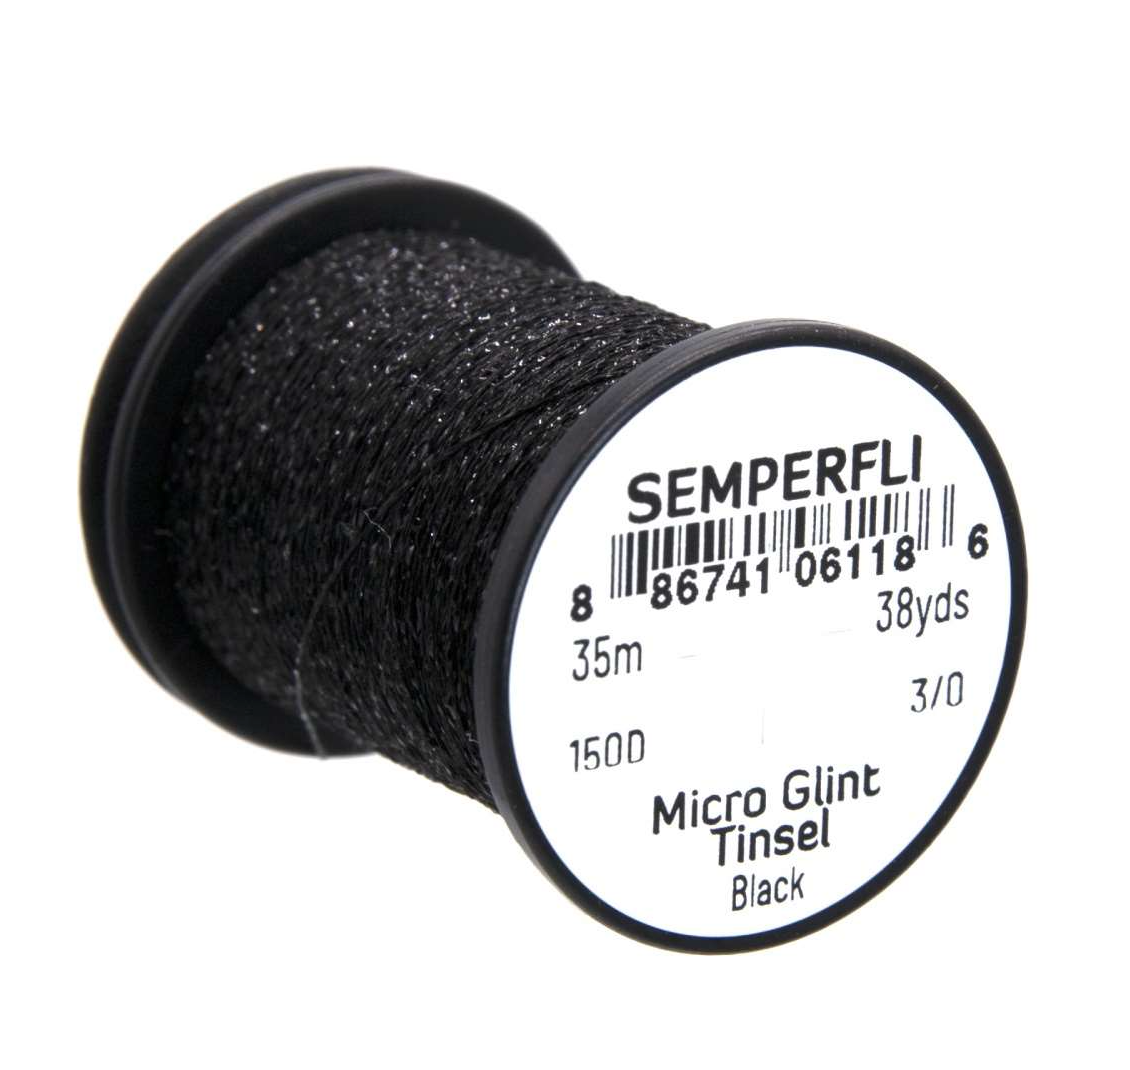 Semperfli Micro Glint nymph tinsel